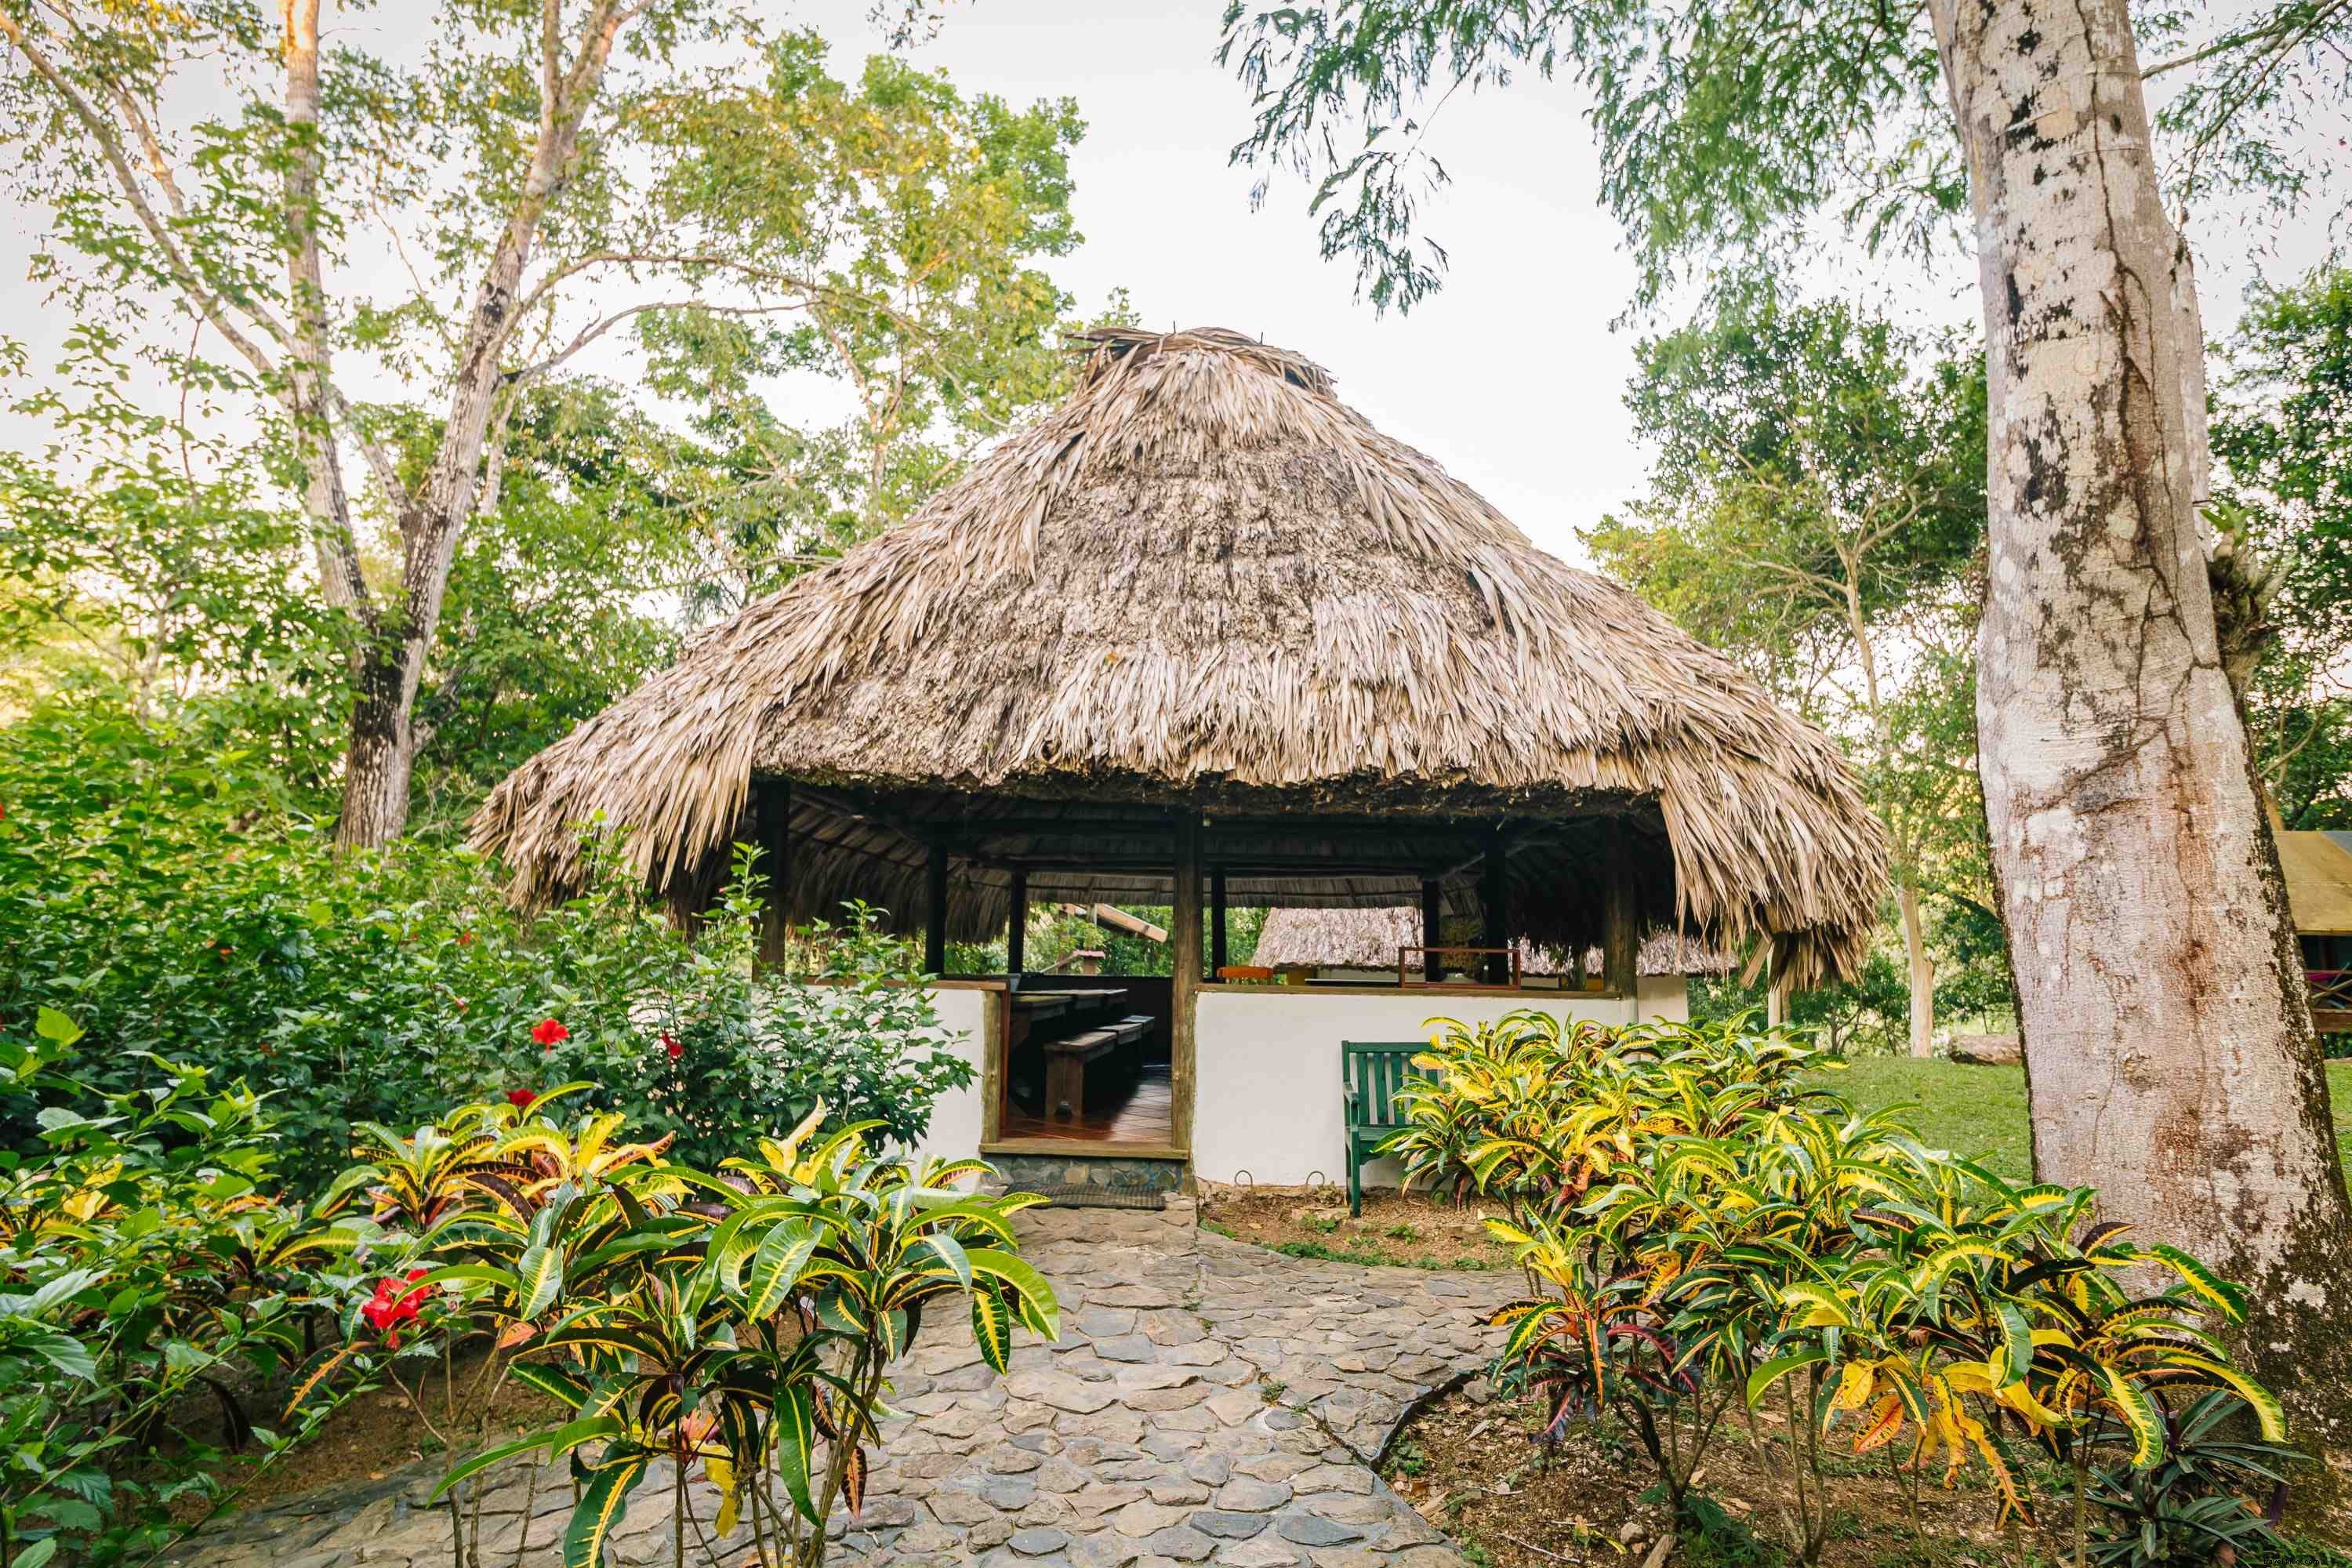 Belice presenta un eco-resort económico en el corazón de la jungla 